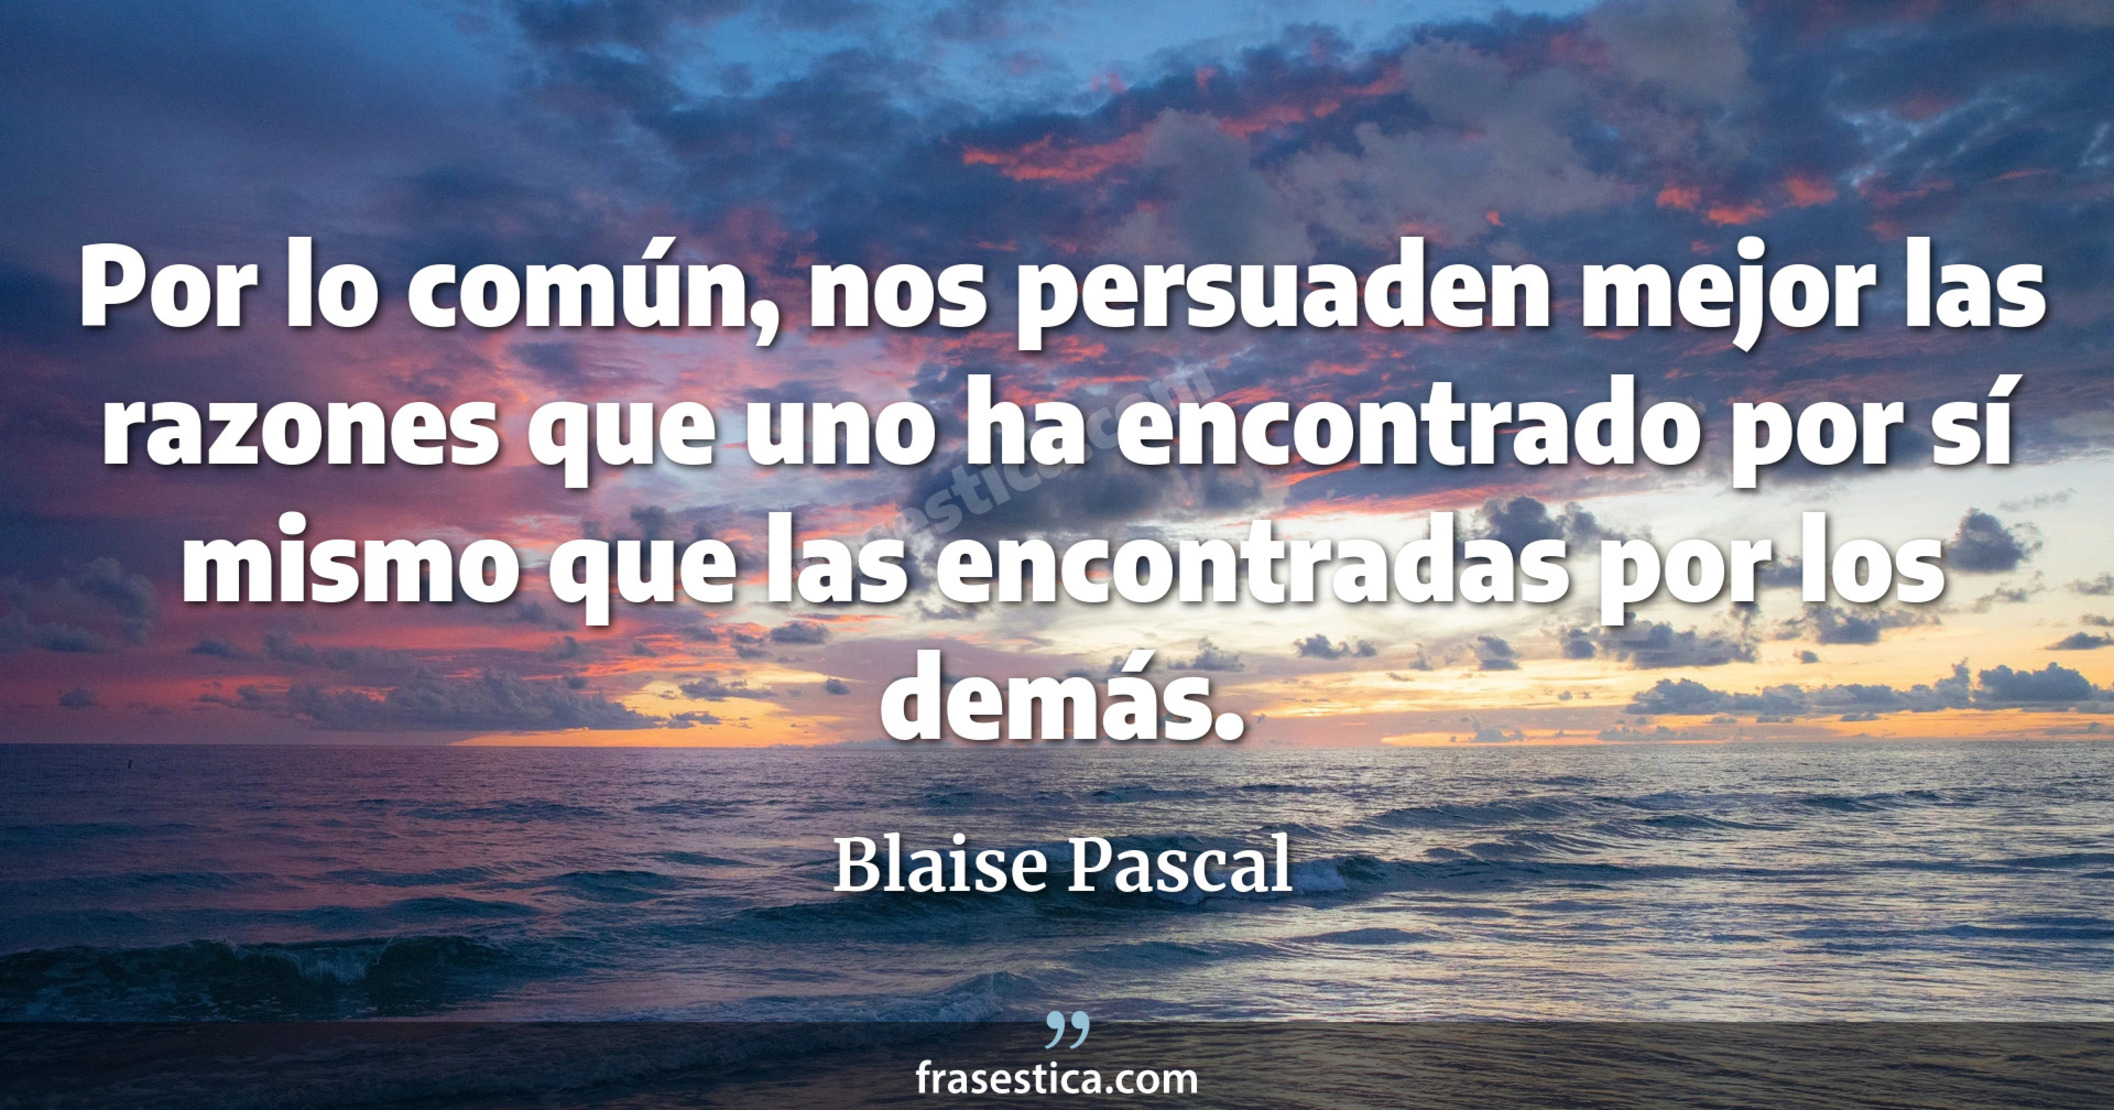 Por lo común, nos persuaden mejor las razones que uno ha encontrado por sí mismo que las encontradas por los demás. - Blaise Pascal